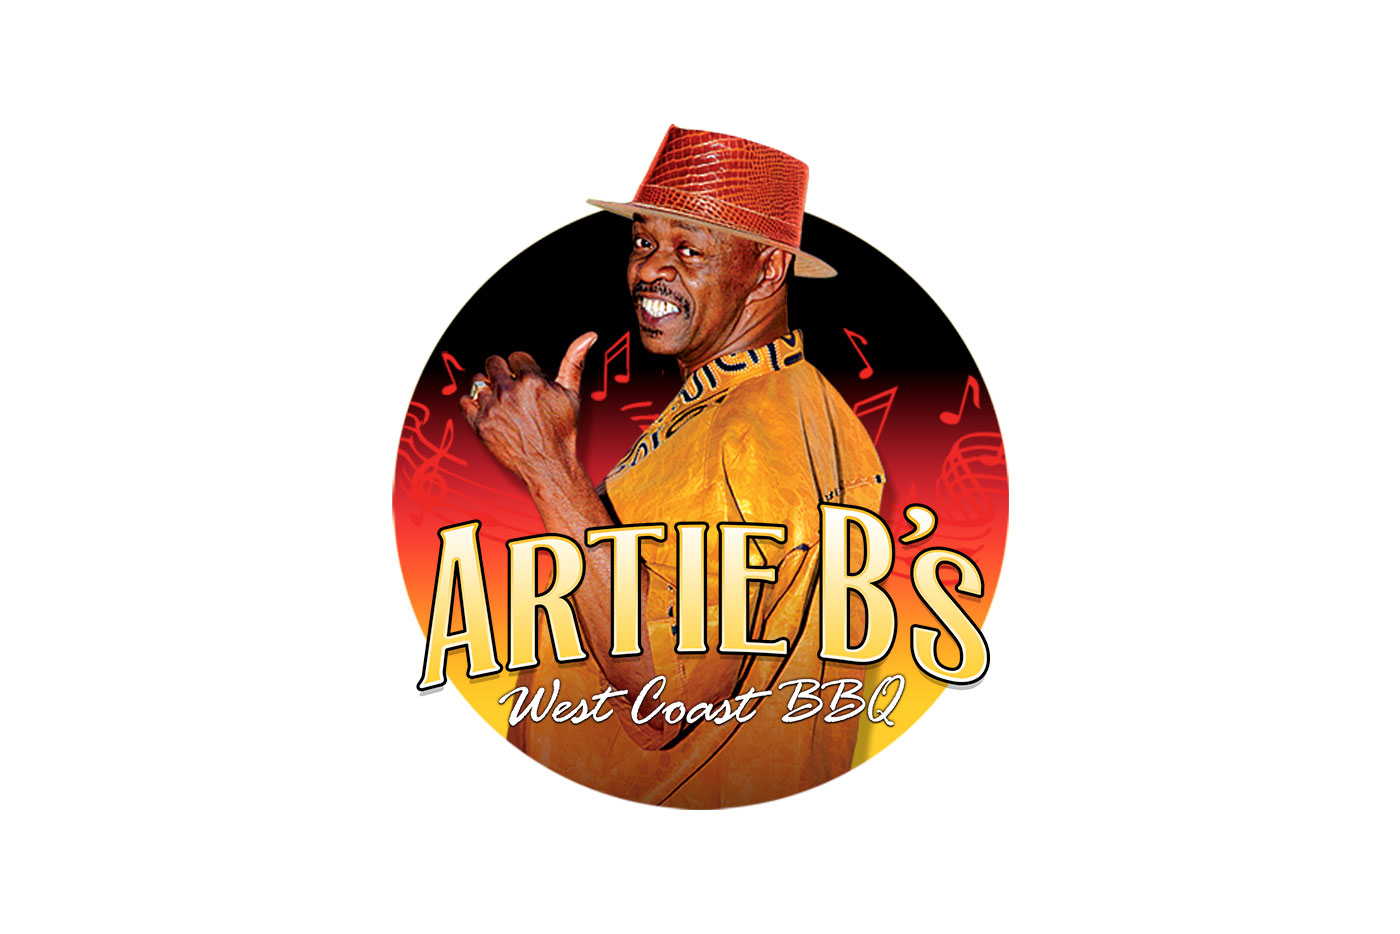 Artie B’s West Coast BBQ